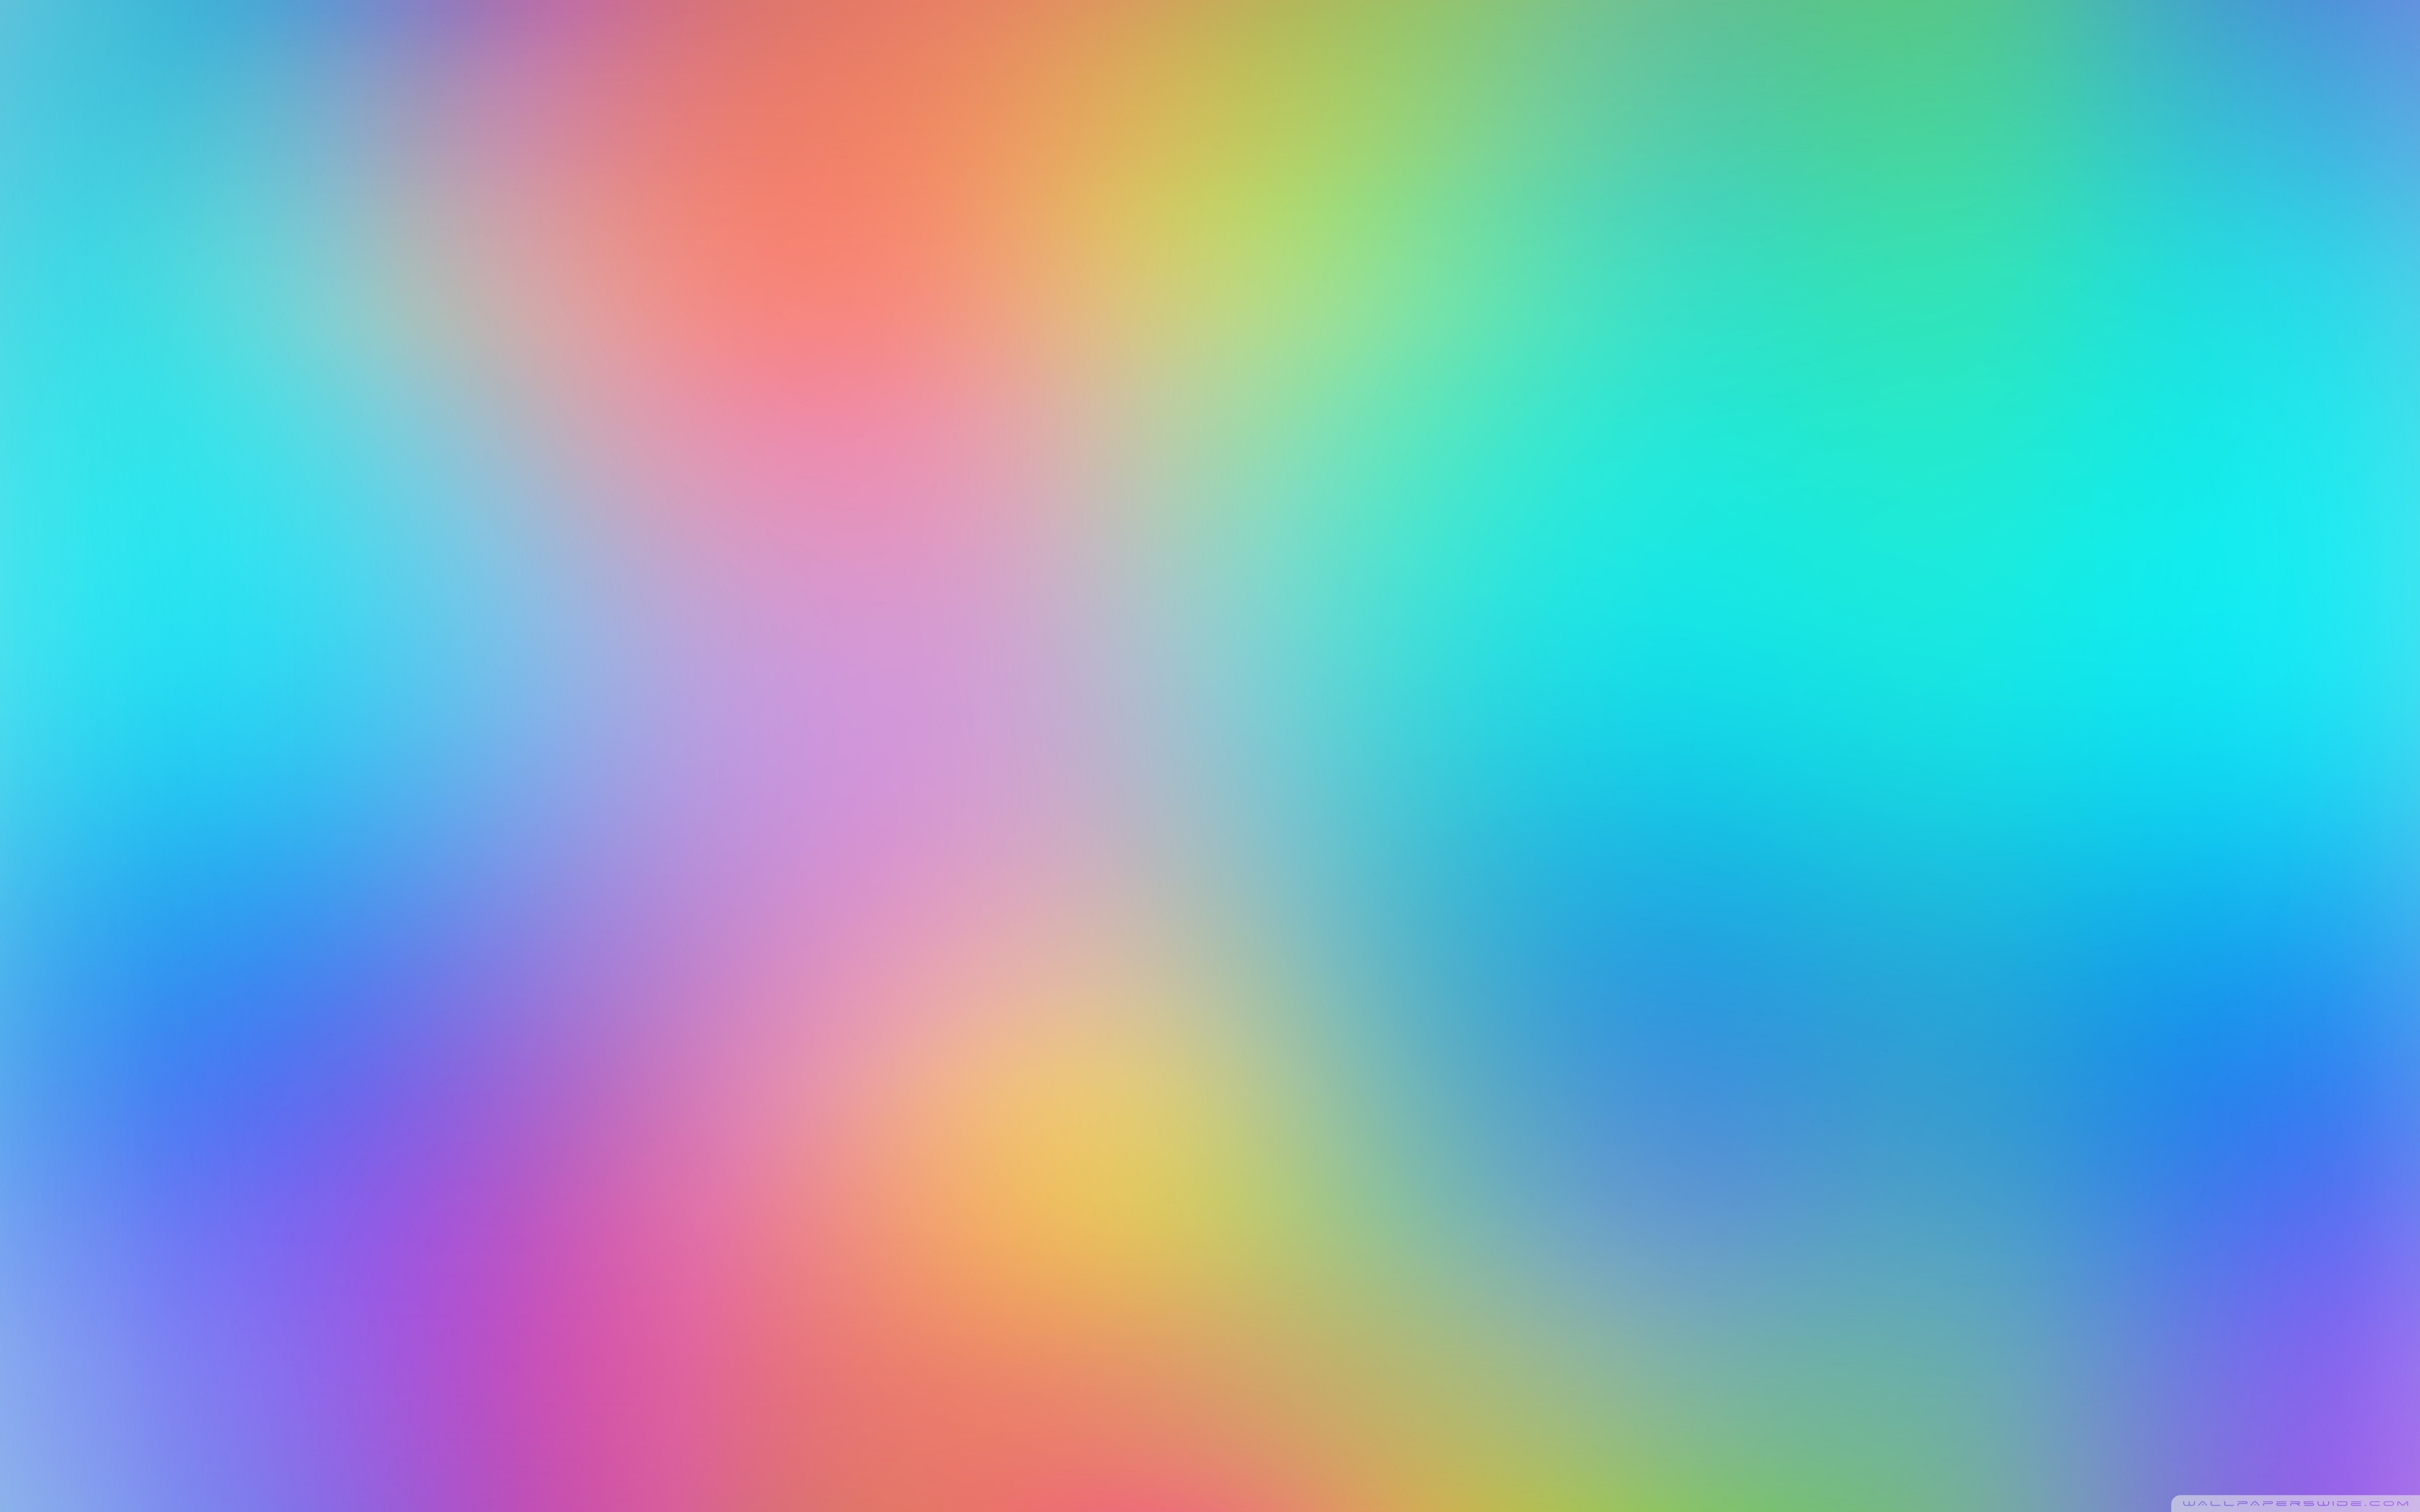 Chuyển đổi bầu không khí trong buồng làm việc bằng những hình nền máy tính đầy màu sắc trên WallpaperSafari. Hình ảnh với sự tươi mới của những màu sắc tươi sáng, sẽ giúp bạn giảm căng thẳng và cải thiện tâm trạng. Với WallpaperSafari, bạn sẽ có những hình nền đẹp mắt và tươi sáng để tạo cho mình một không gian làm việc hiệu quả hơn.